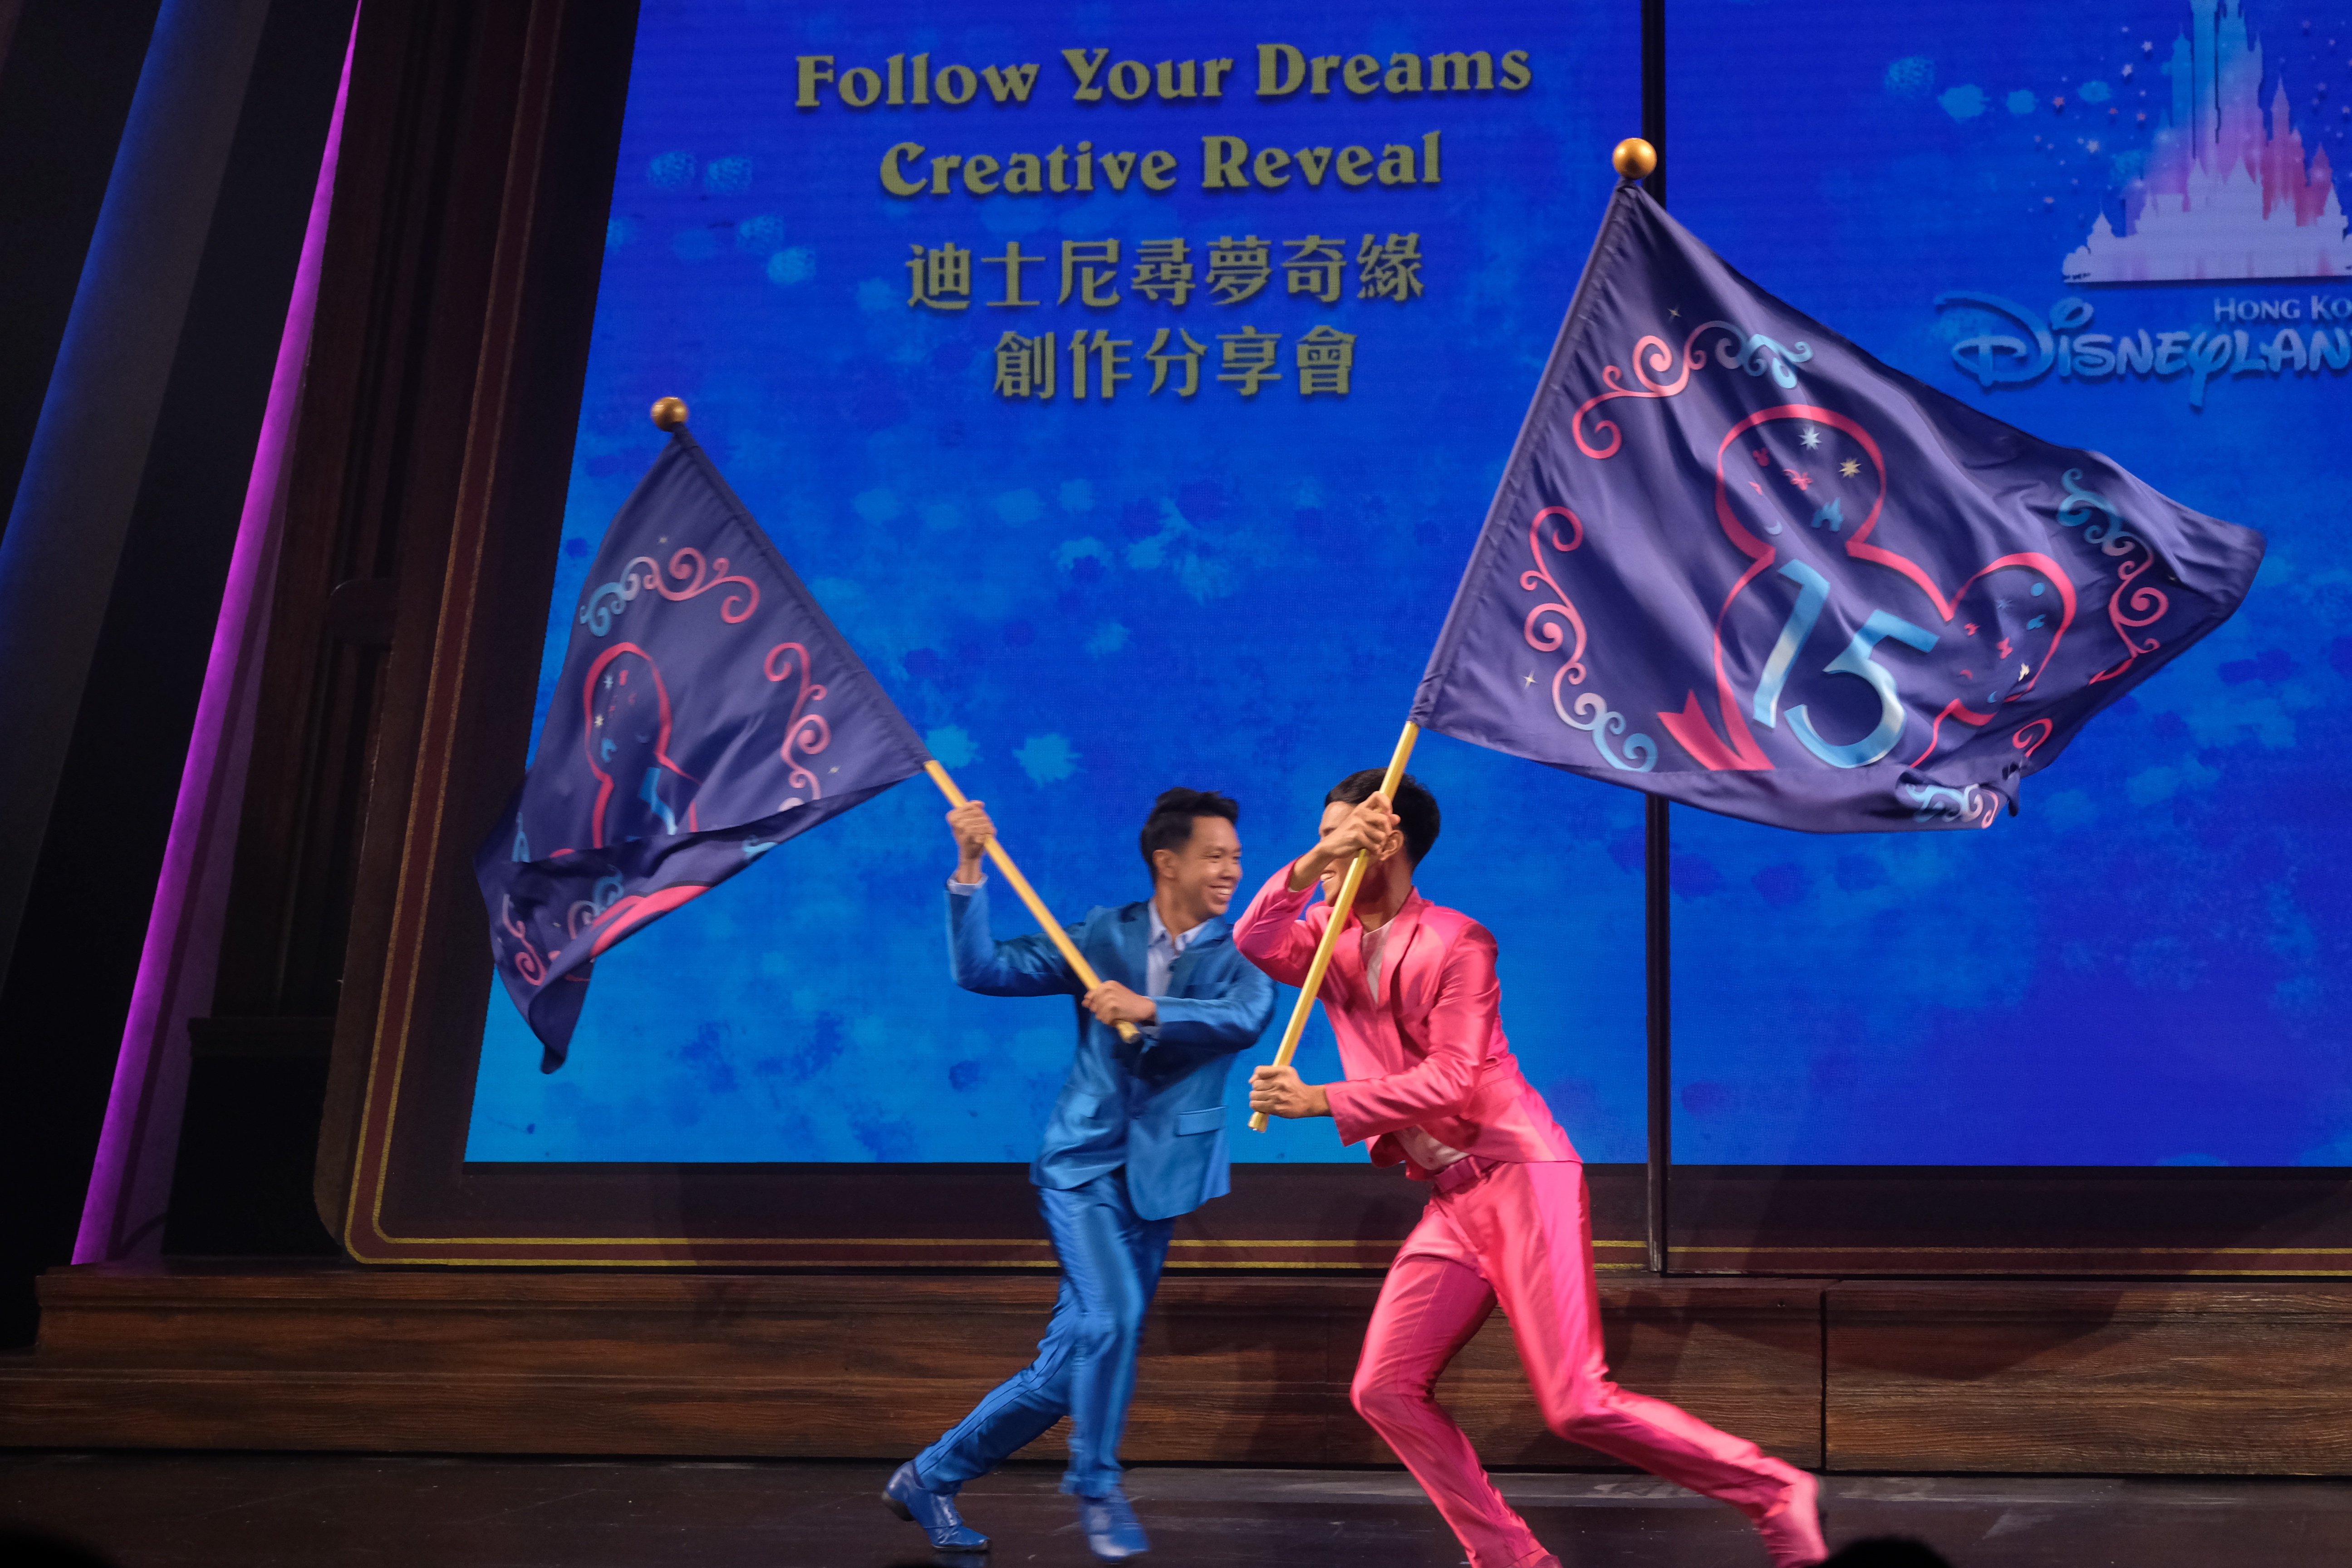 香港迪士尼樂園新城堡「奇妙夢想城堡」開幕半年，新城堡的全新日間匯演登場將於6月30日起登場，名為「迪士尼尋夢奇緣」。

樂園今日（9日）率先舉辦創作分享會，由幕後團隊分享創作，首次曝光部分表演，包括原創歌曲及重新編制的音樂，以及迪士尼朋友勇敢的追夢故事。

賓客將會跟隨米奇老鼠與多位全新配搭的迪士尼朋友，以令人耳目一新的音樂、舞蹈一起遊歷一場追夢之旅，啟發夢想，成就快樂。（大公文匯全媒體記者麥鈞傑攝）